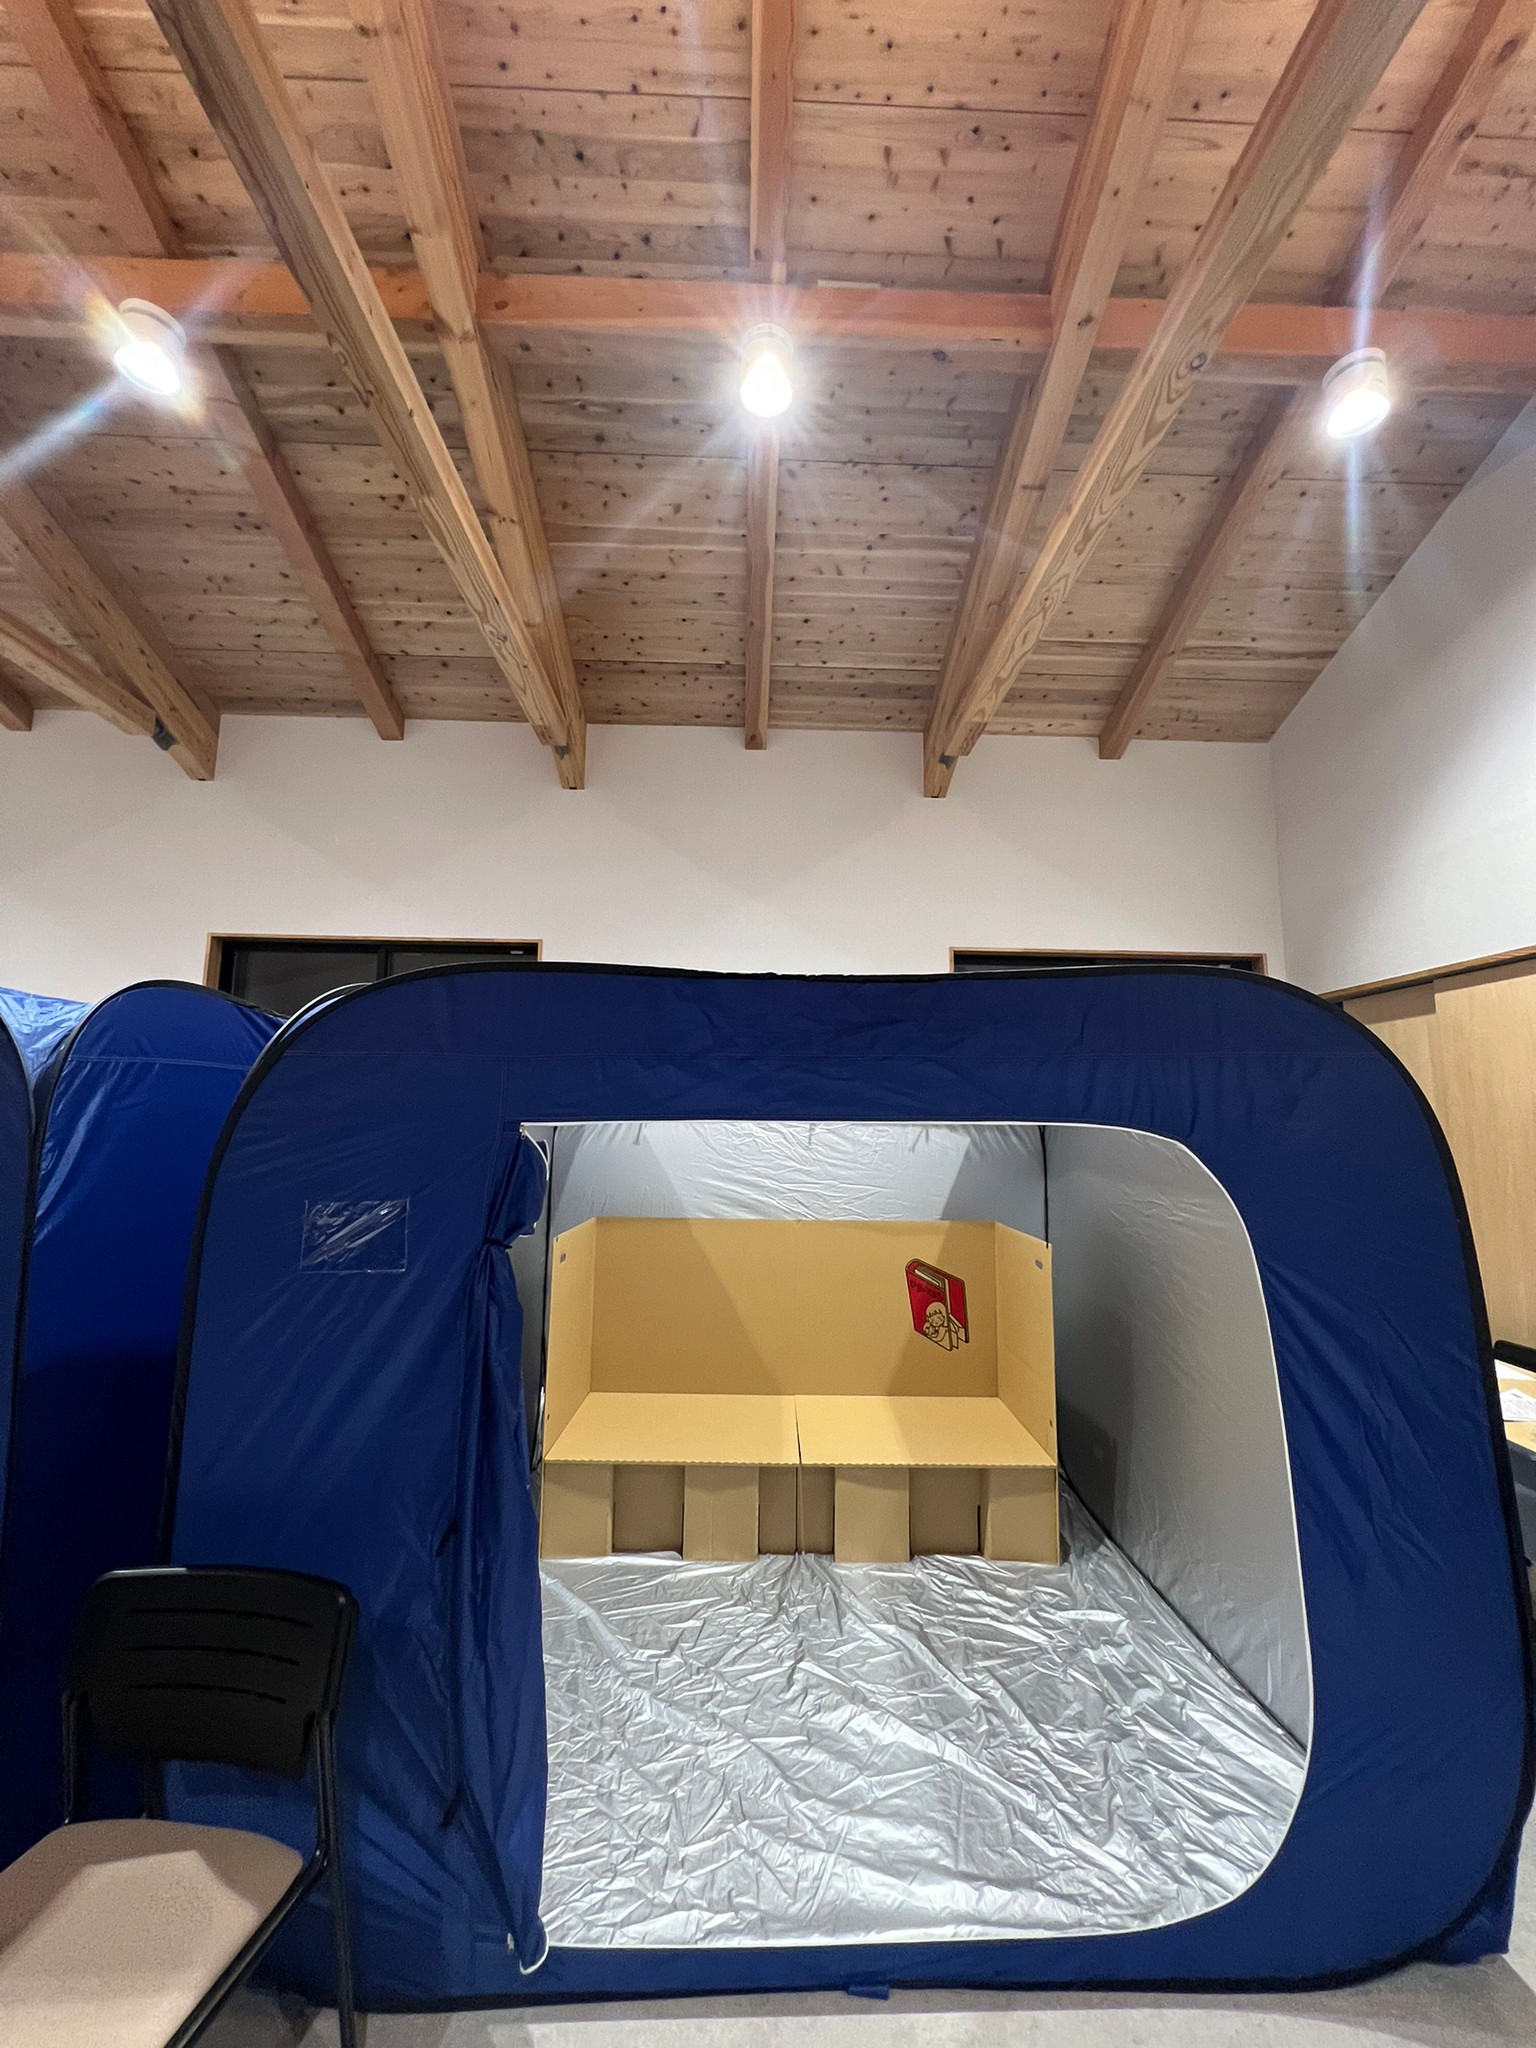 避難所の備蓄として揃えるべき段ボールベッドとテント